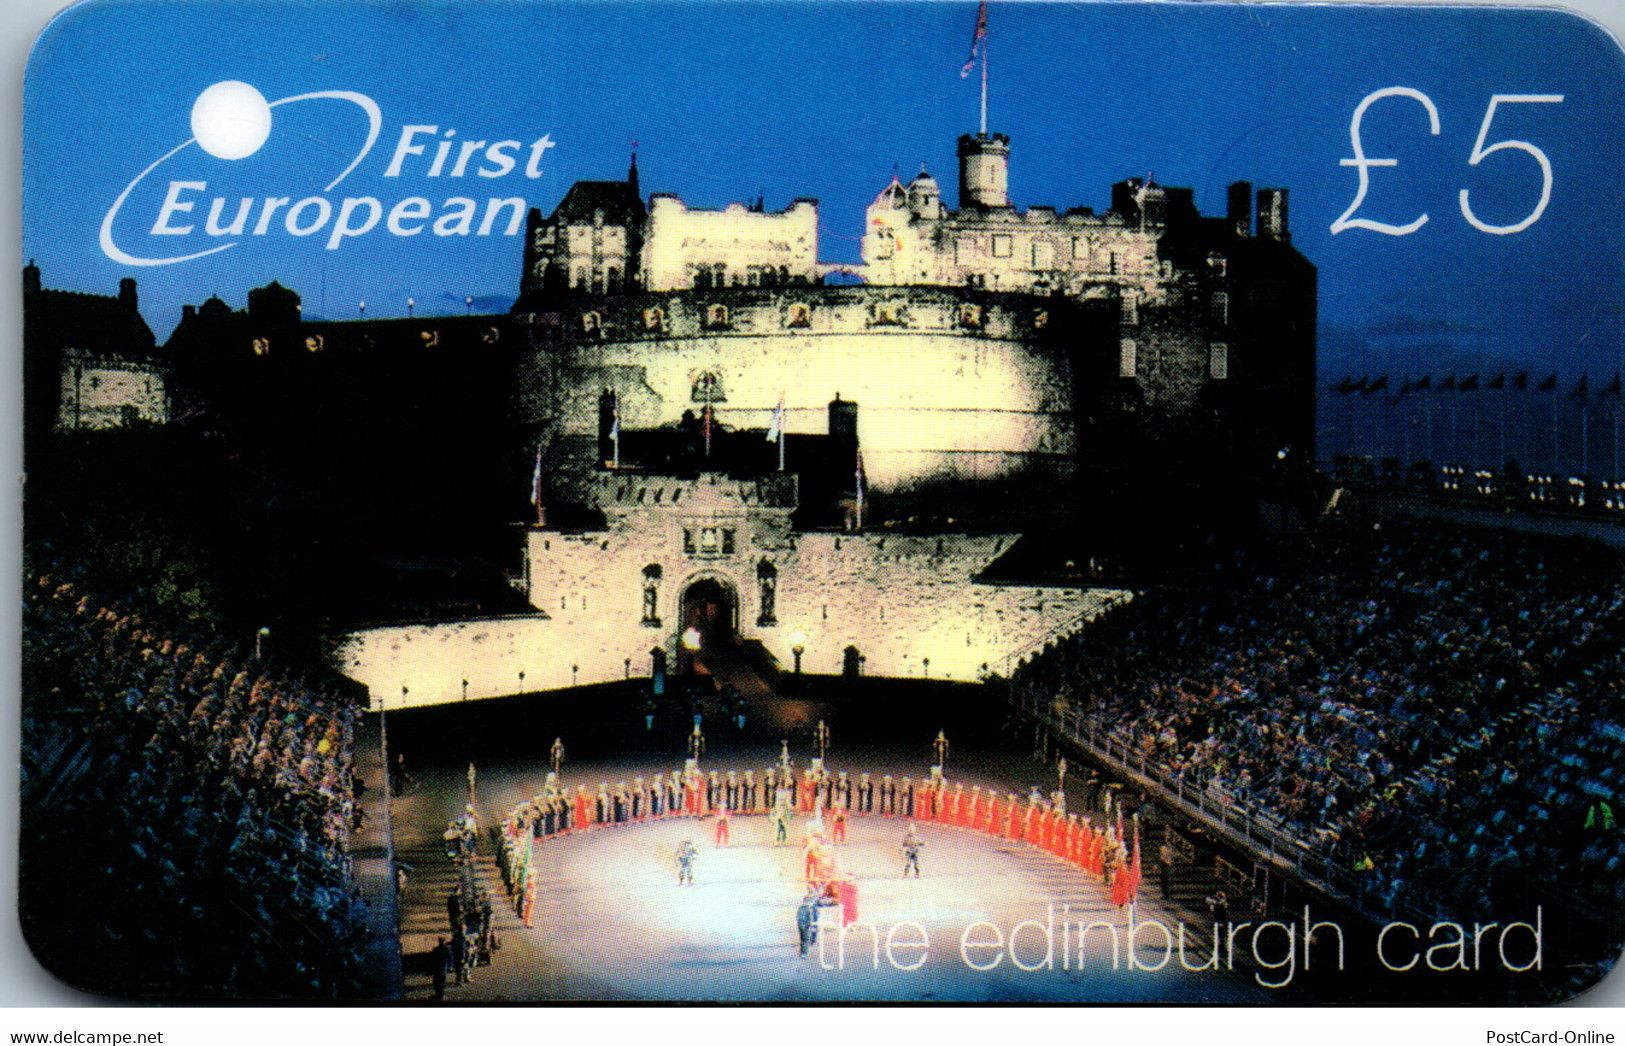 29246 - Großbritannien - First European , The Edinburgh Card , Prepaid - BT Kaarten Voor Hele Wereld (Vooraf Betaald)